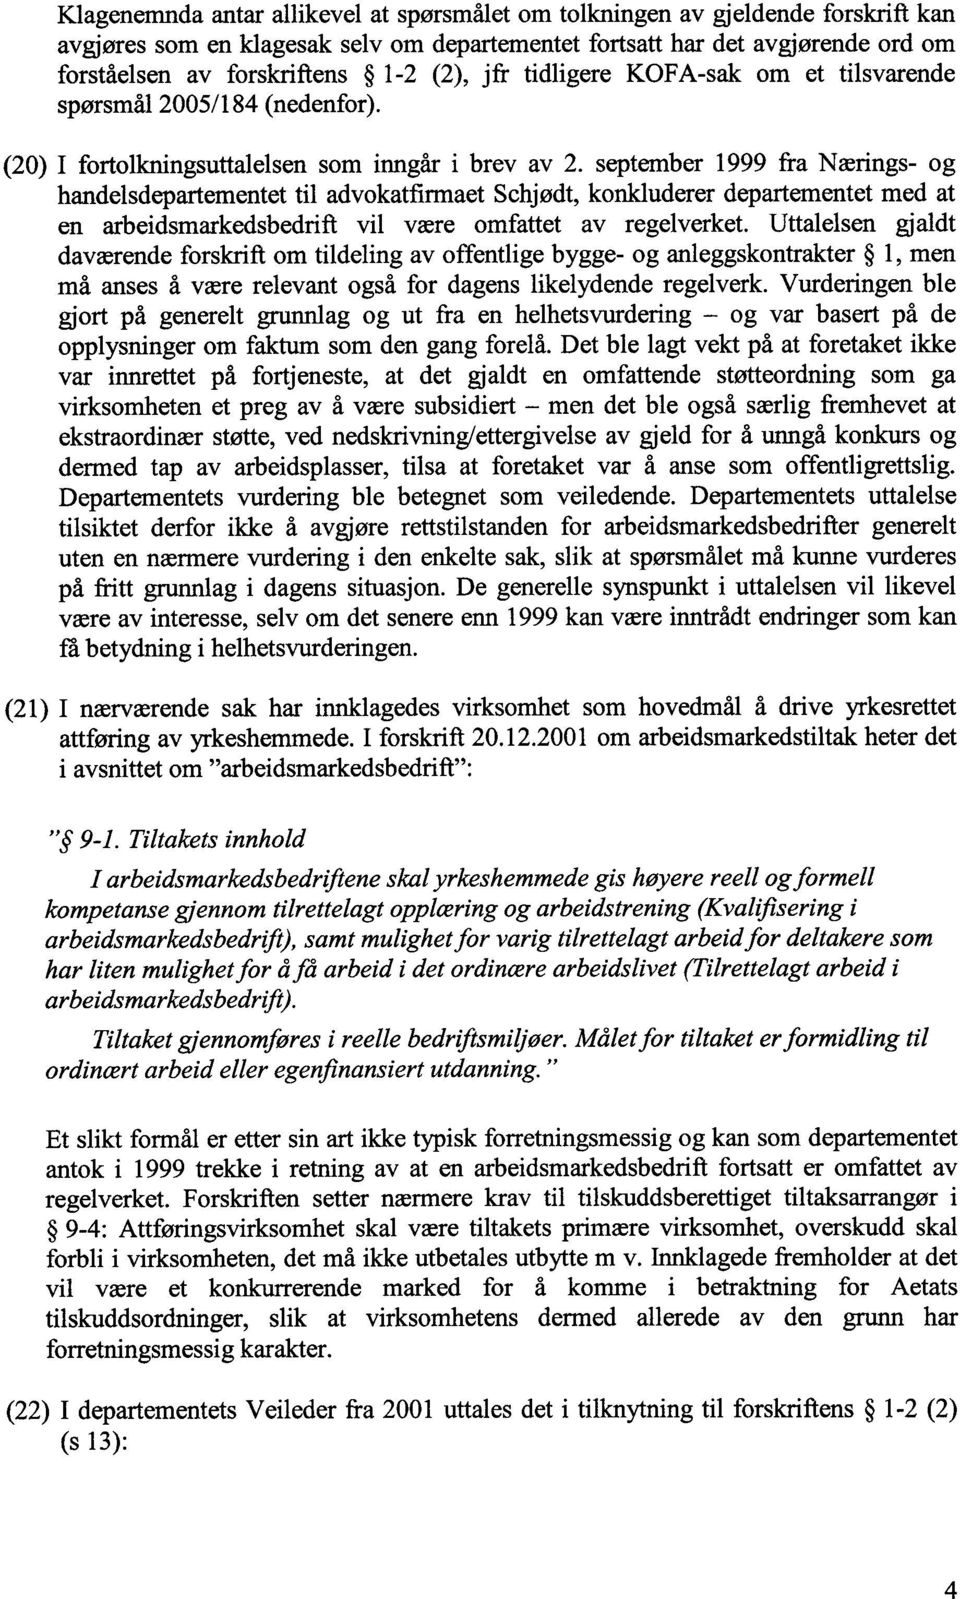 september 1999 fra Nærings- og handelsdepartementet til advokatfirmaet Schjødt, konkluderer departementet med at en arbeidsmarkedsbedrift vil være omfattet av regelverket.